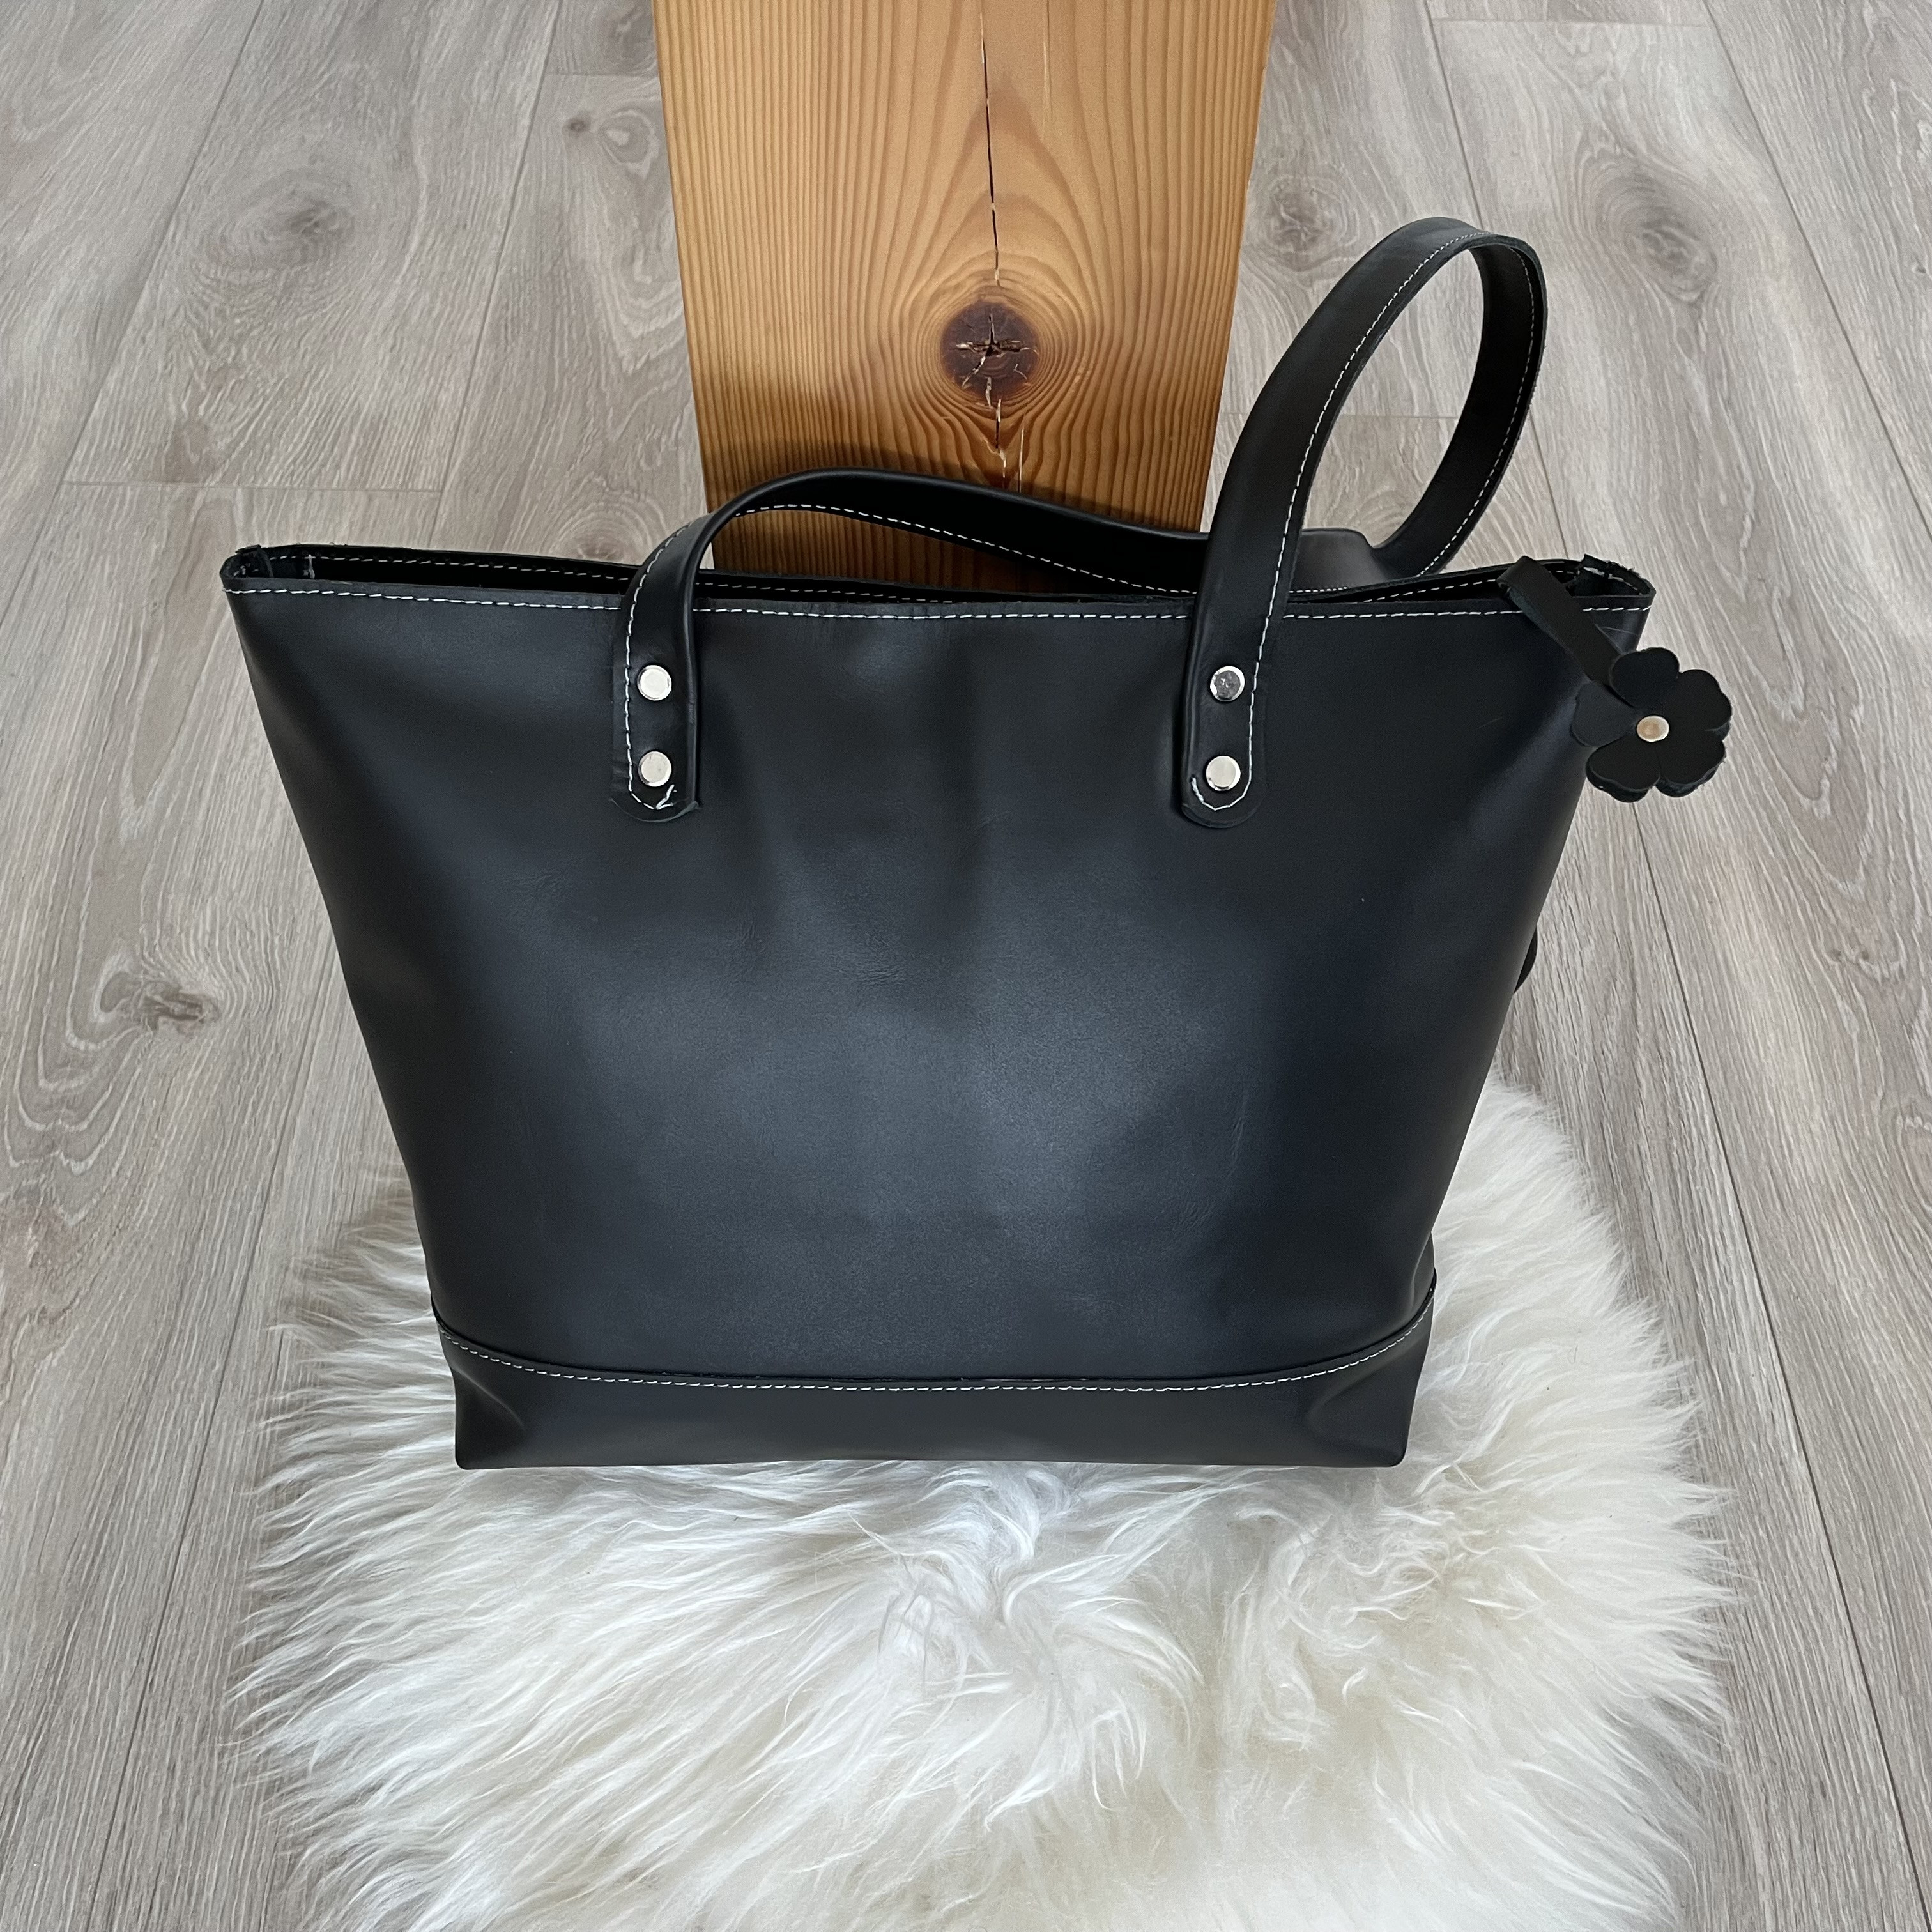 Czarna torba Shopperka ze skóry format A5 na ramie.